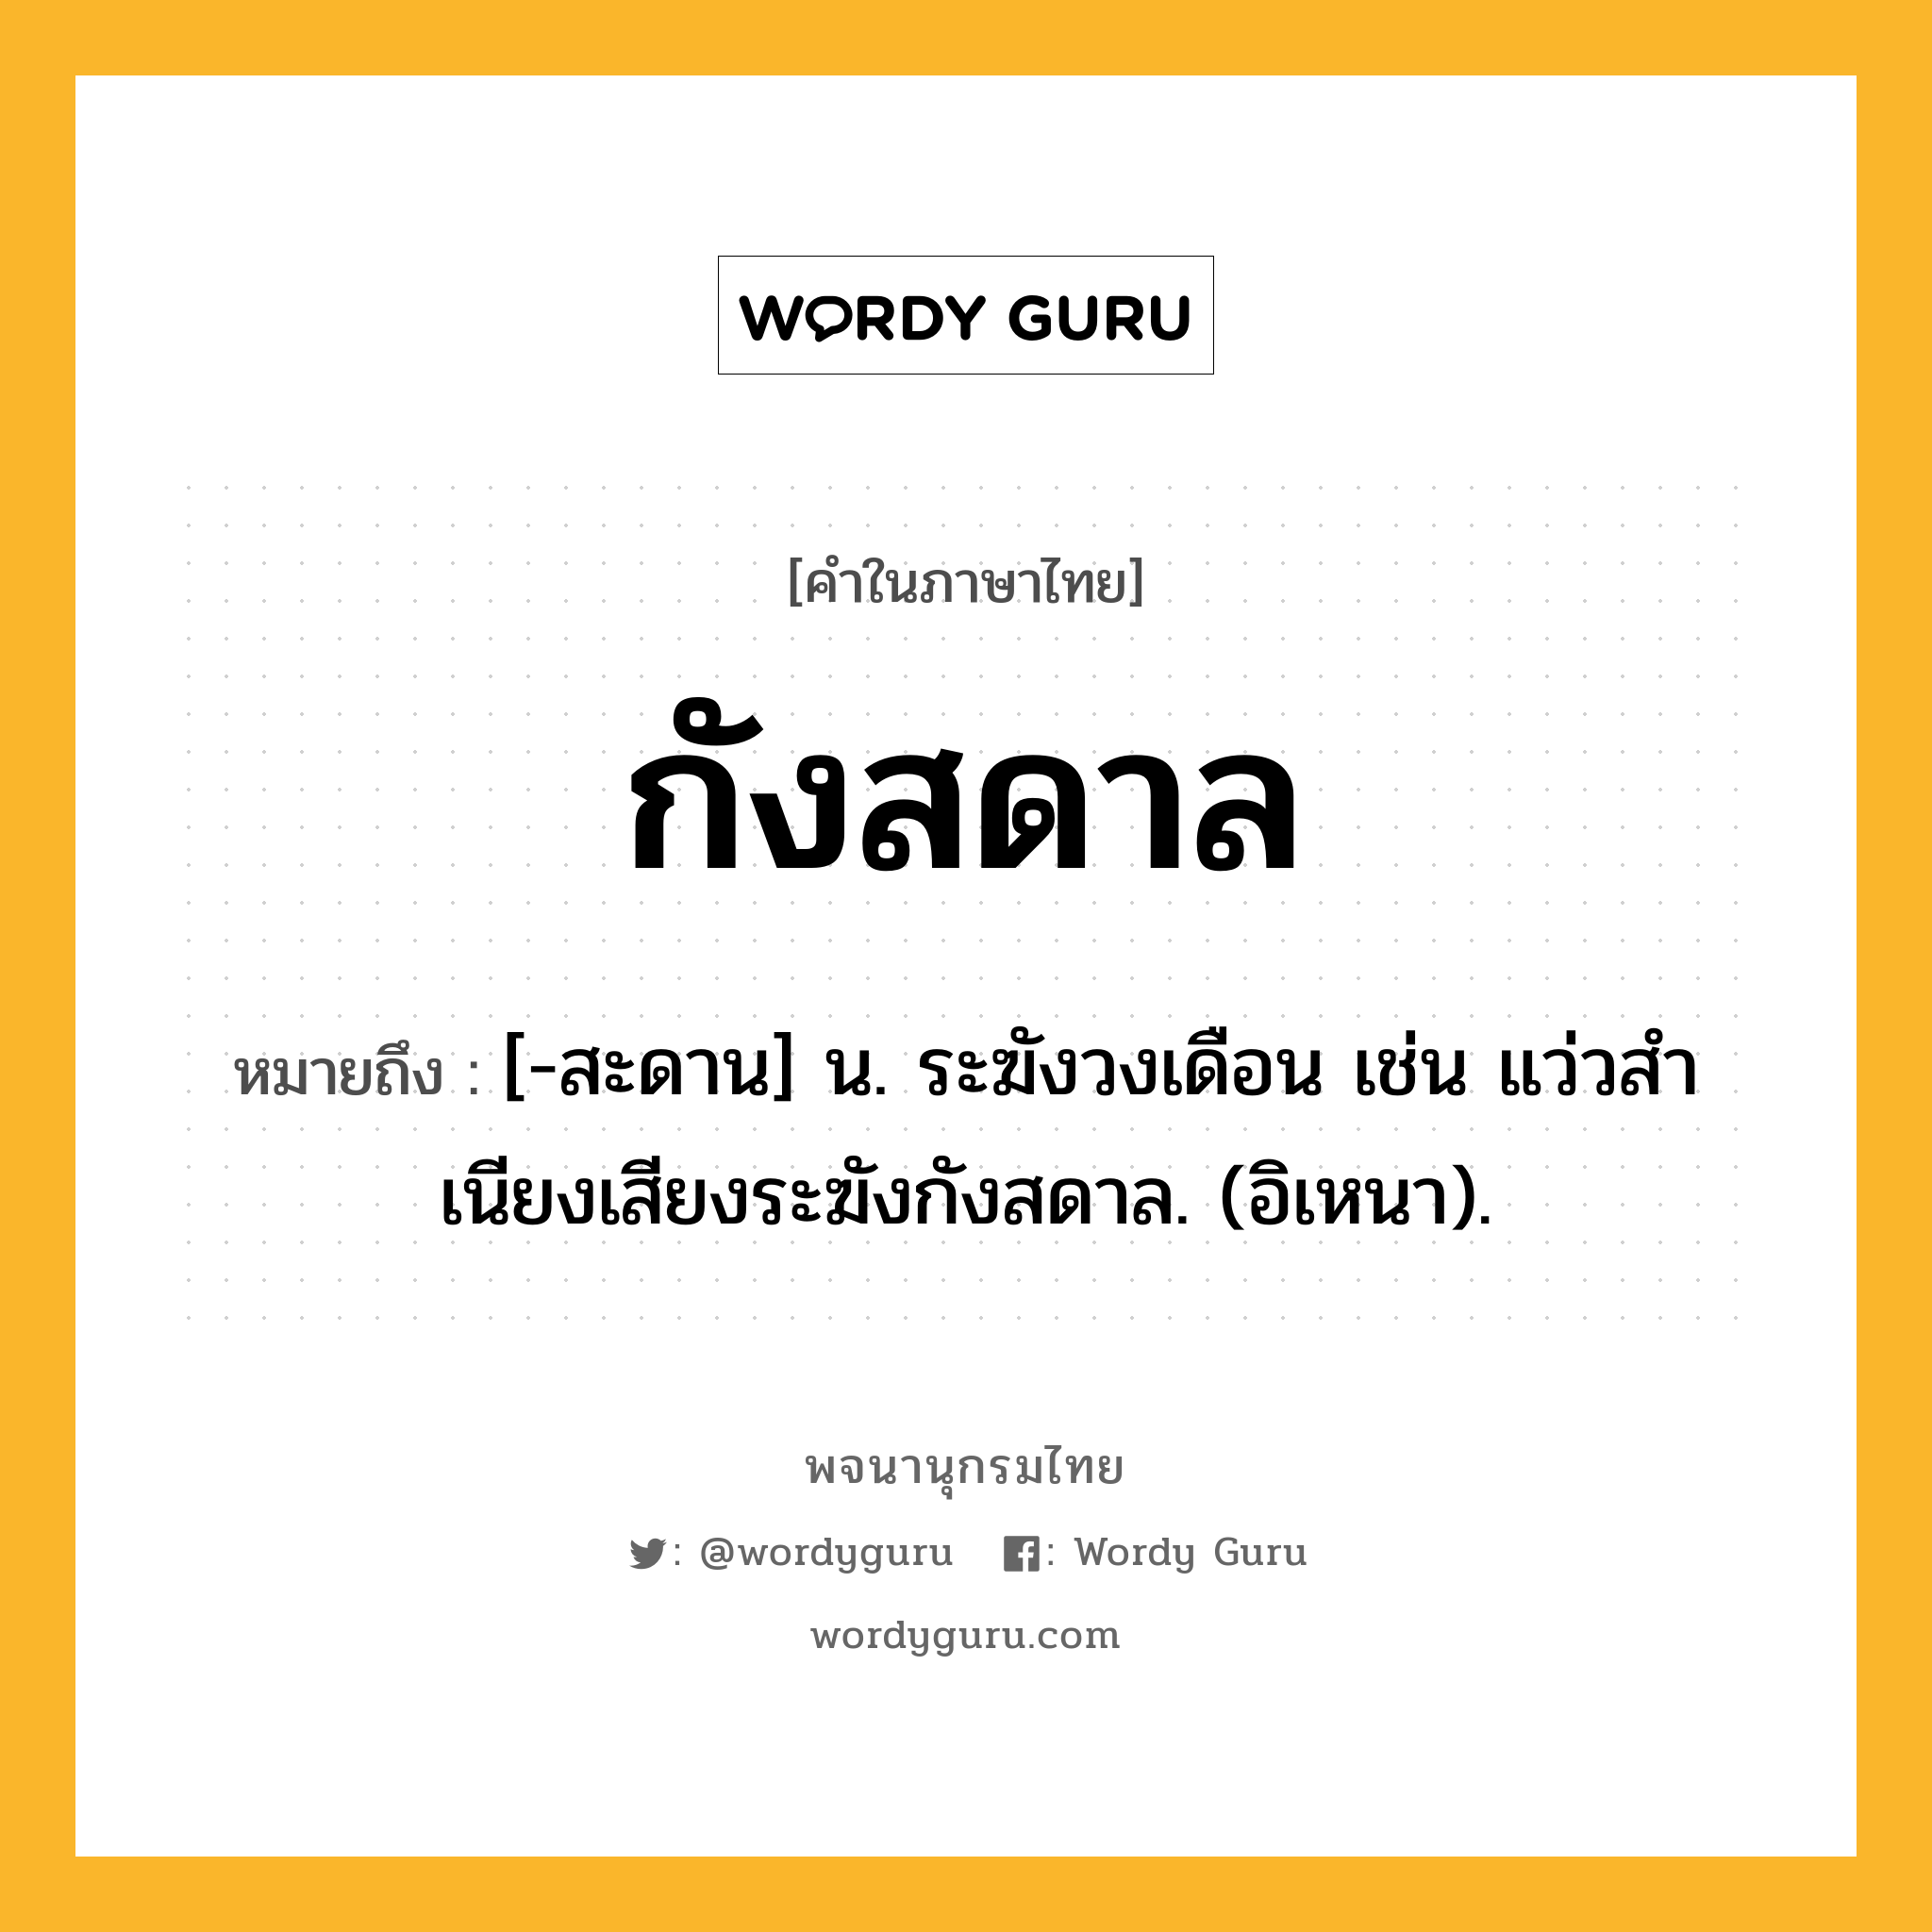 กังสดาล ความหมาย หมายถึงอะไร?, คำในภาษาไทย กังสดาล หมายถึง [-สะดาน] น. ระฆังวงเดือน เช่น แว่วสําเนียงเสียงระฆังกังสดาล. (อิเหนา).